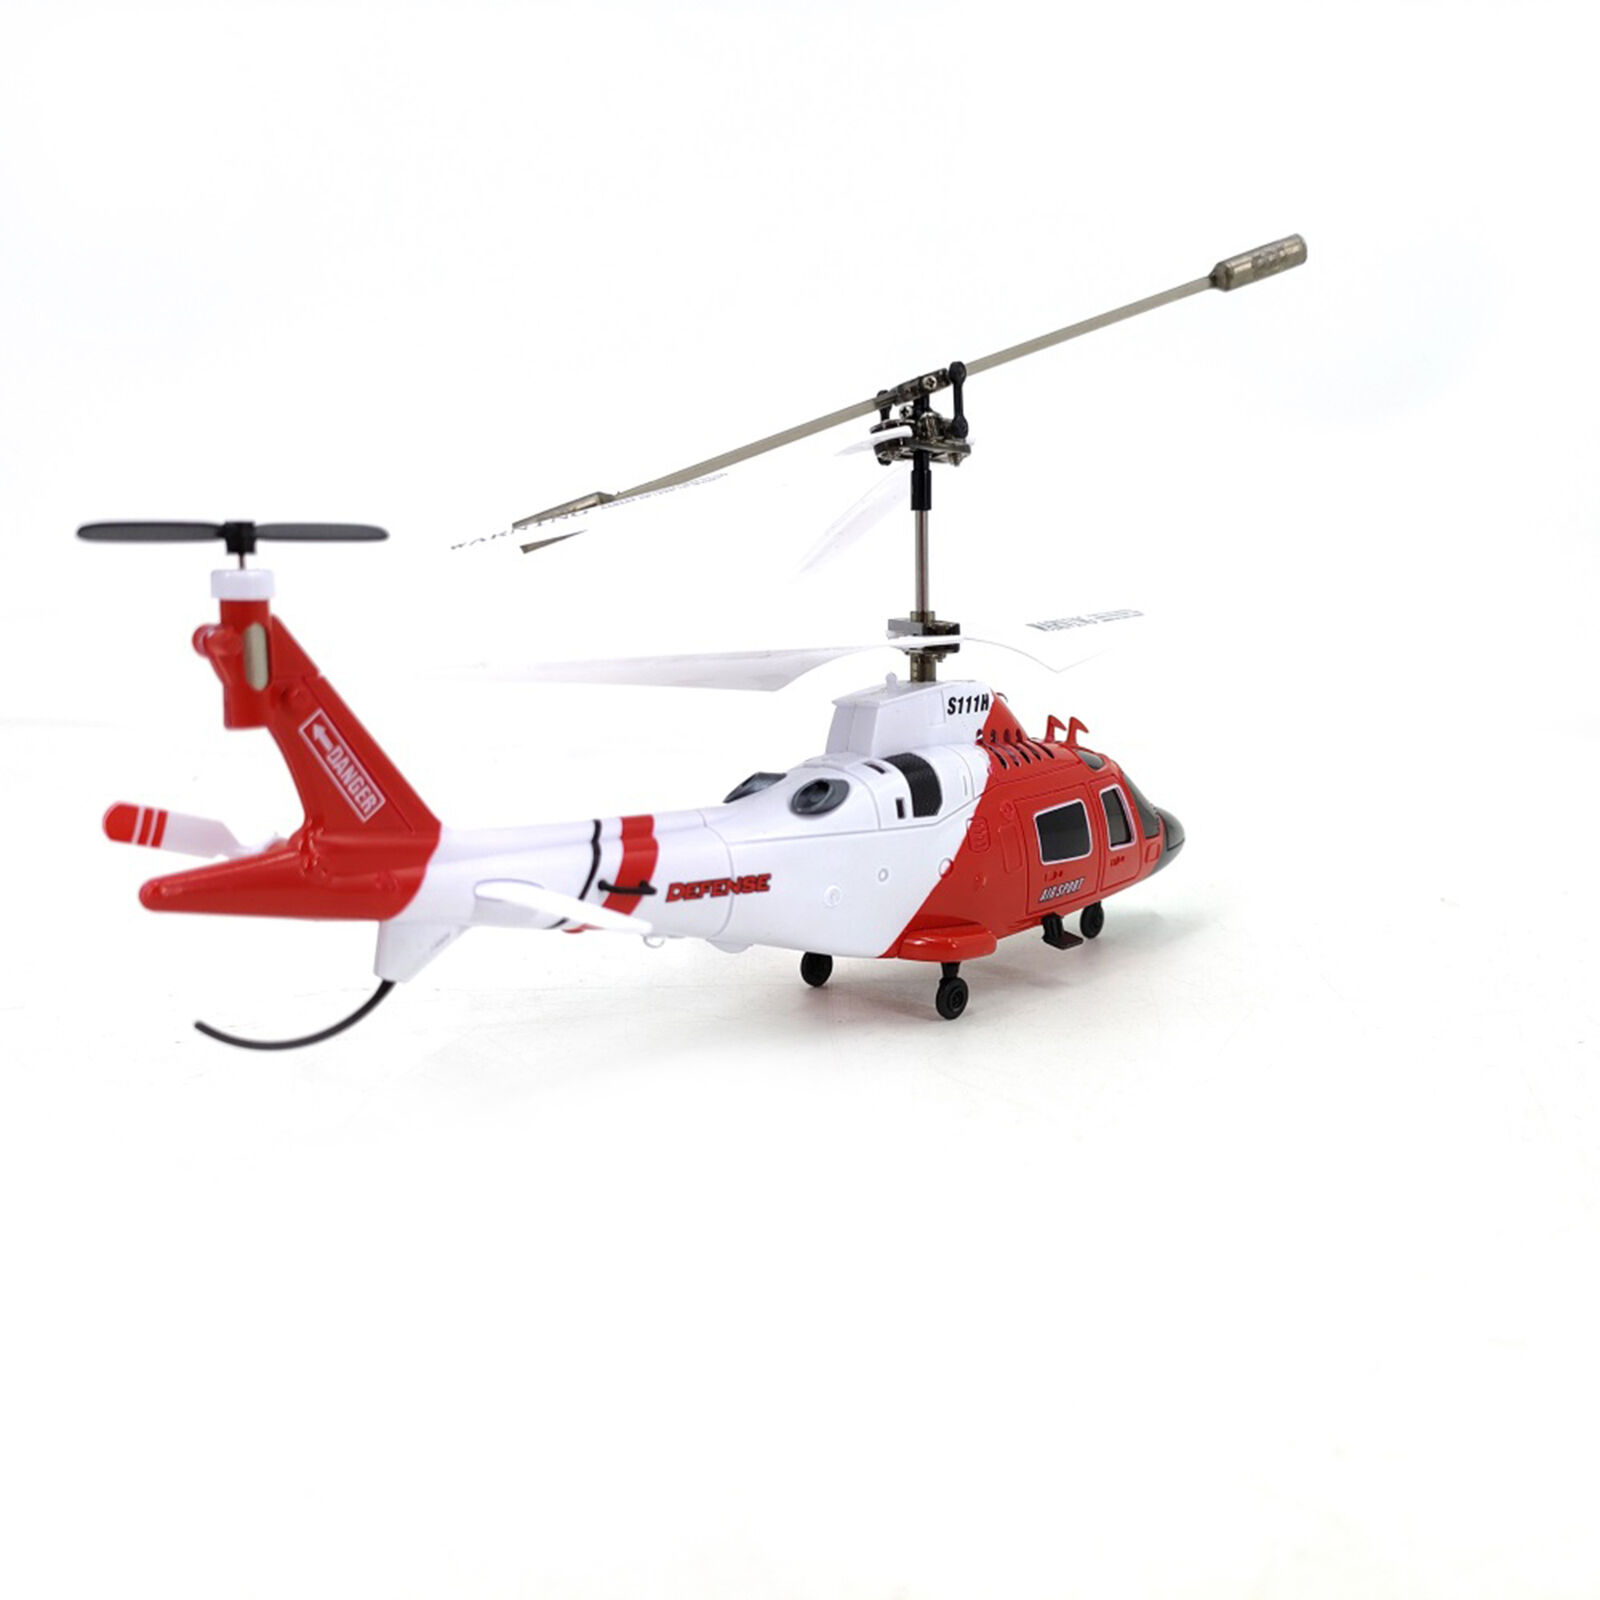 هلیکوپتر بازی سایما مدل S111H